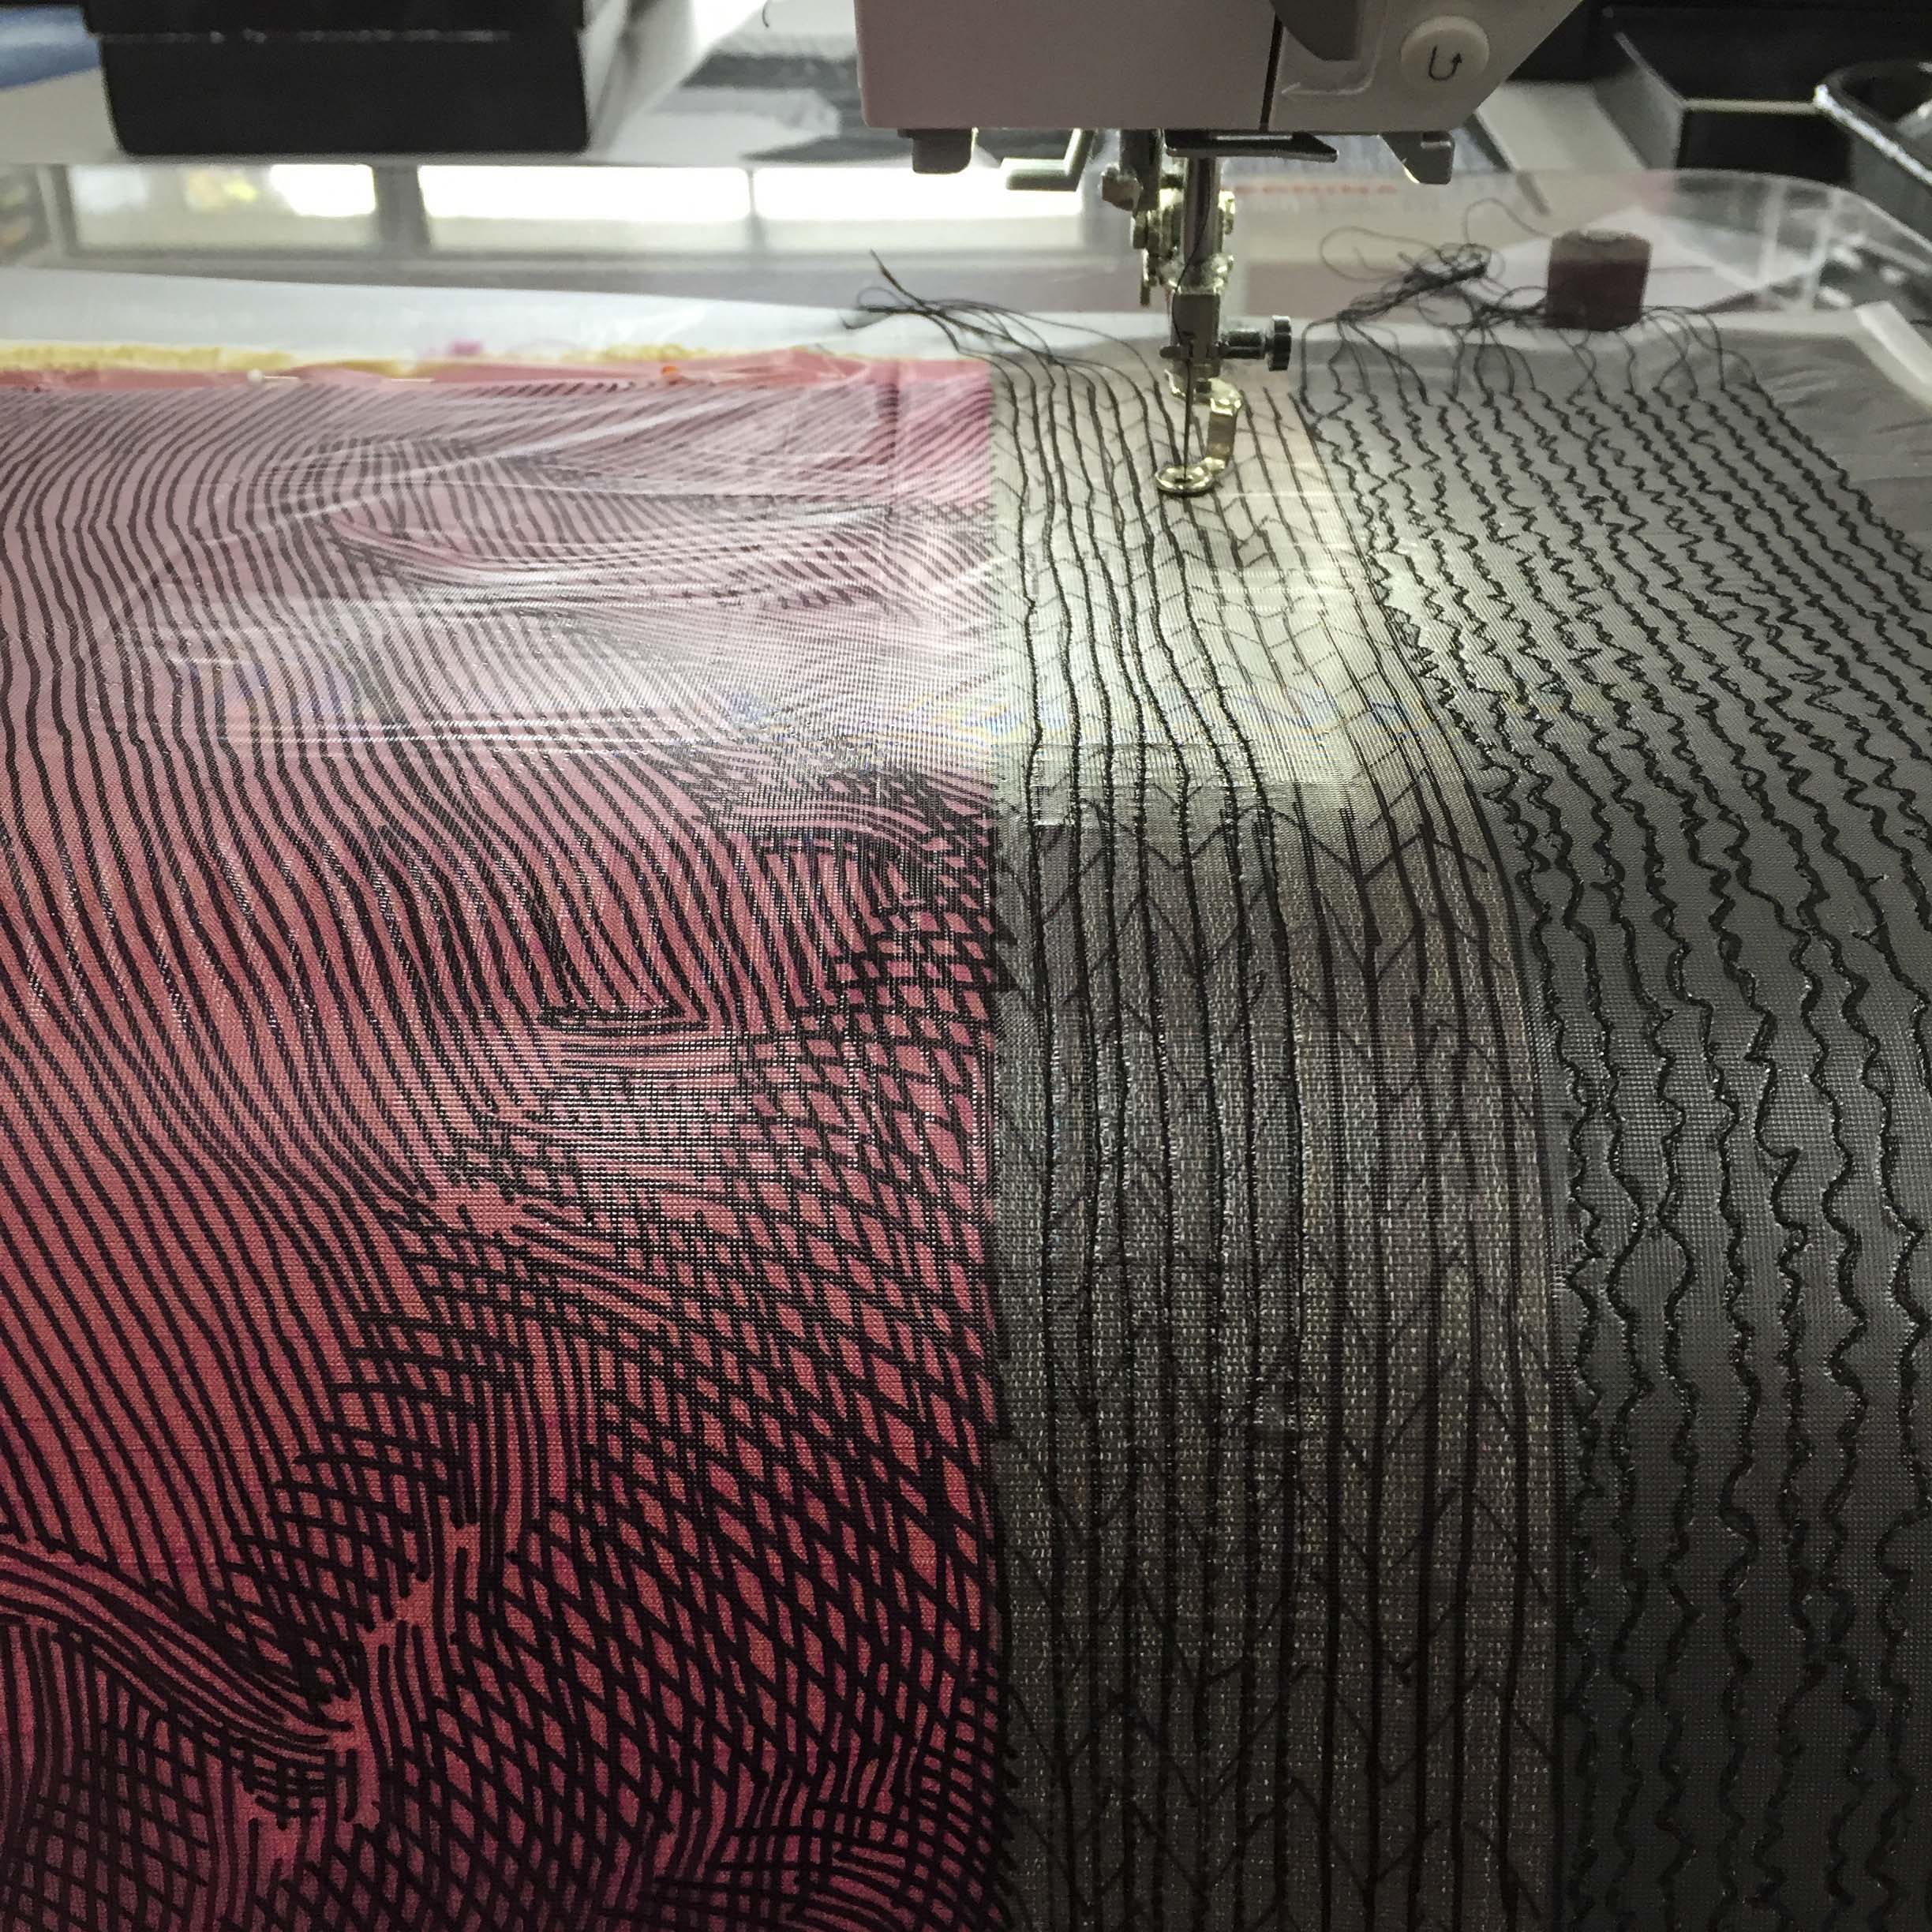 engraved stitching underway